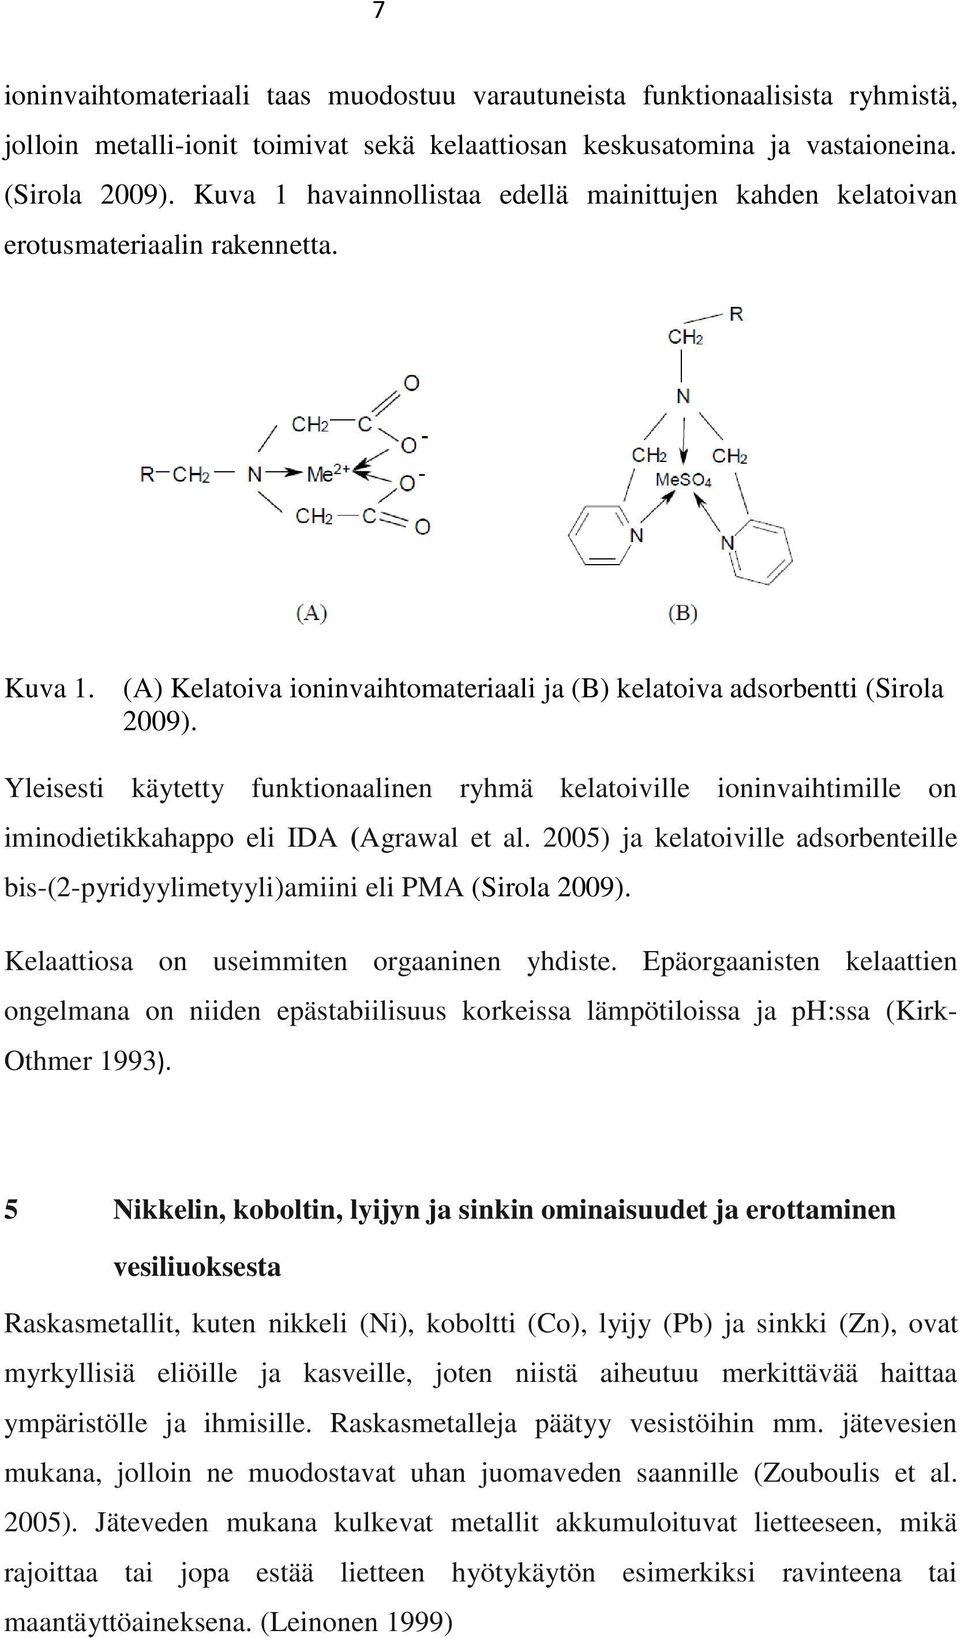 Yleisesti käytetty funktionaalinen ryhmä kelatoiville ioninvaihtimille on iminodietikkahappo eli IDA (Agrawal et al. 5) ja kelatoiville adsorbenteille bis-(-pyridyylimetyyli)amiini eli PMA (Sirola 9).